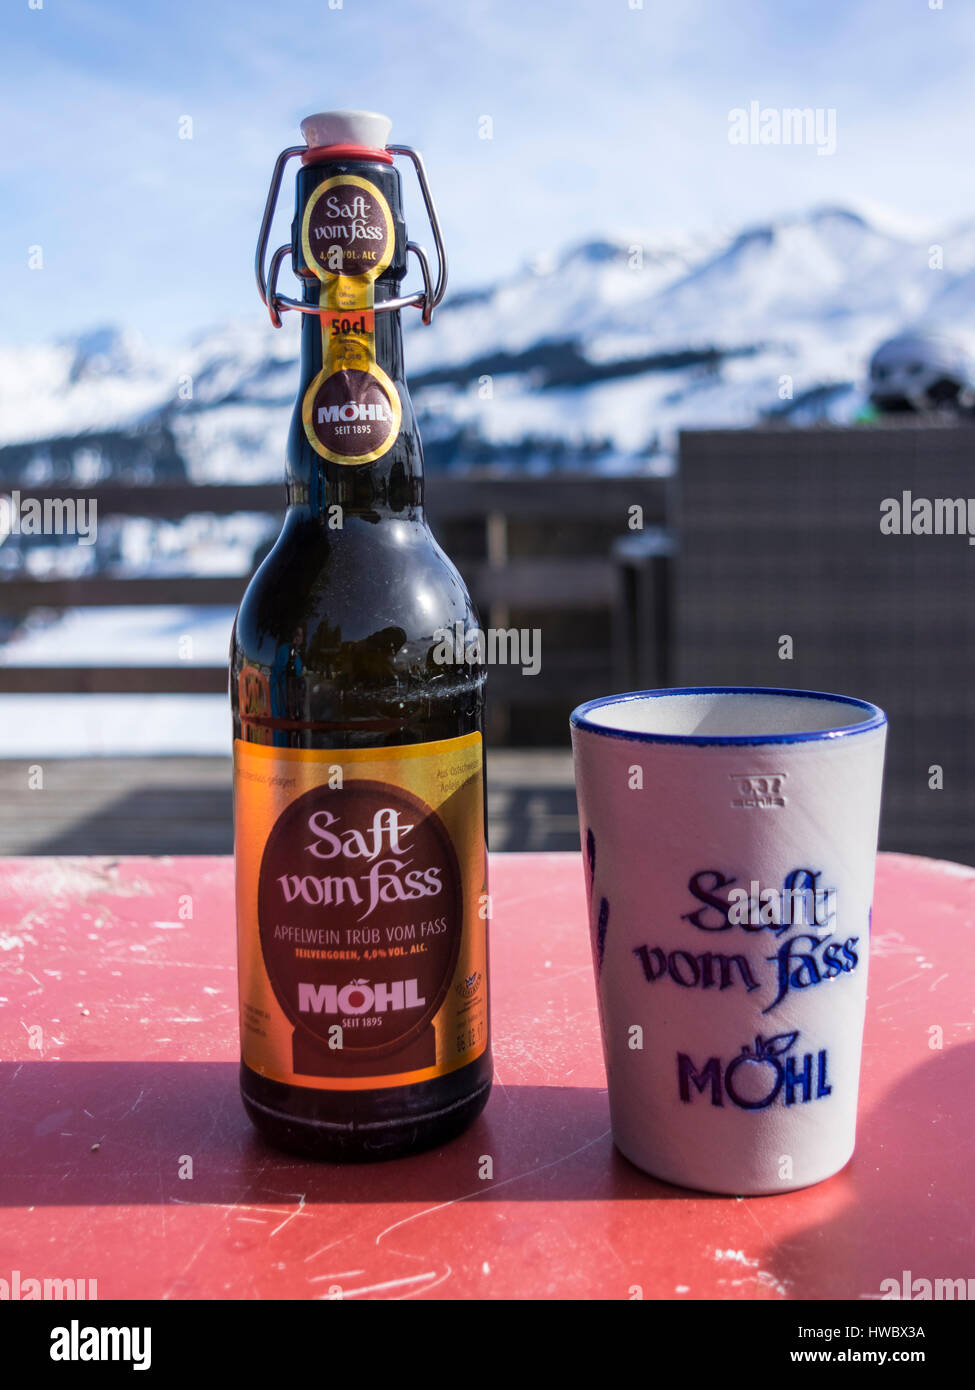 Eine Flasche Möhl Apfelwein "Saft Vom Fass", einem traditionellen Schweizer Apfelwein mit einem Keramik-Becher. Alpine Hintergrund. Stockfoto